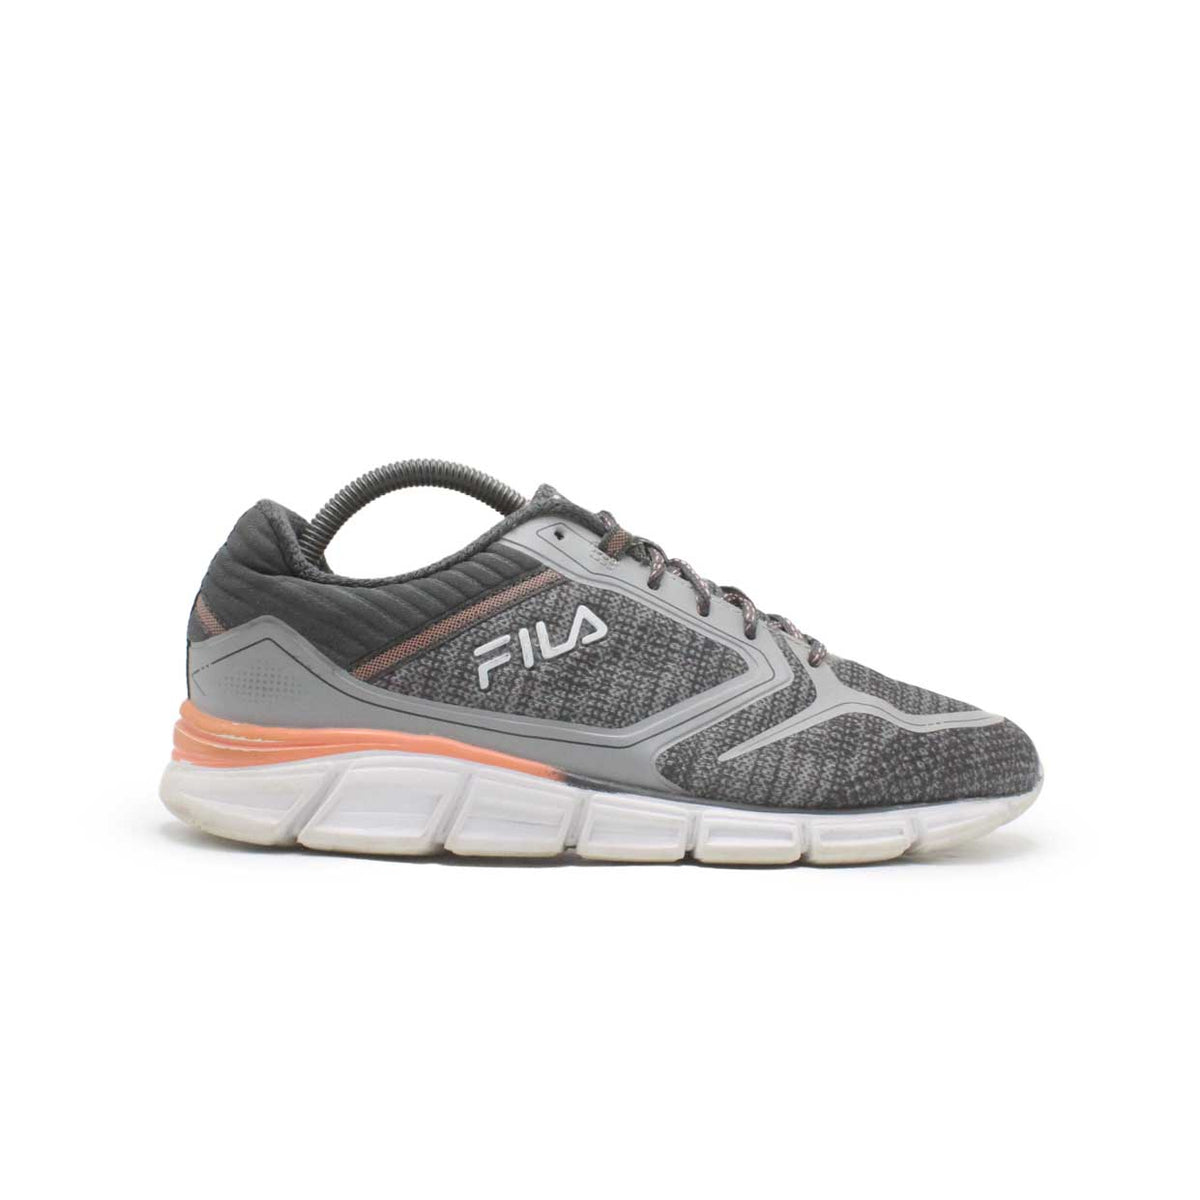 Fila Best Trainer Running Shoe: Amazon.co.uk: Fashion